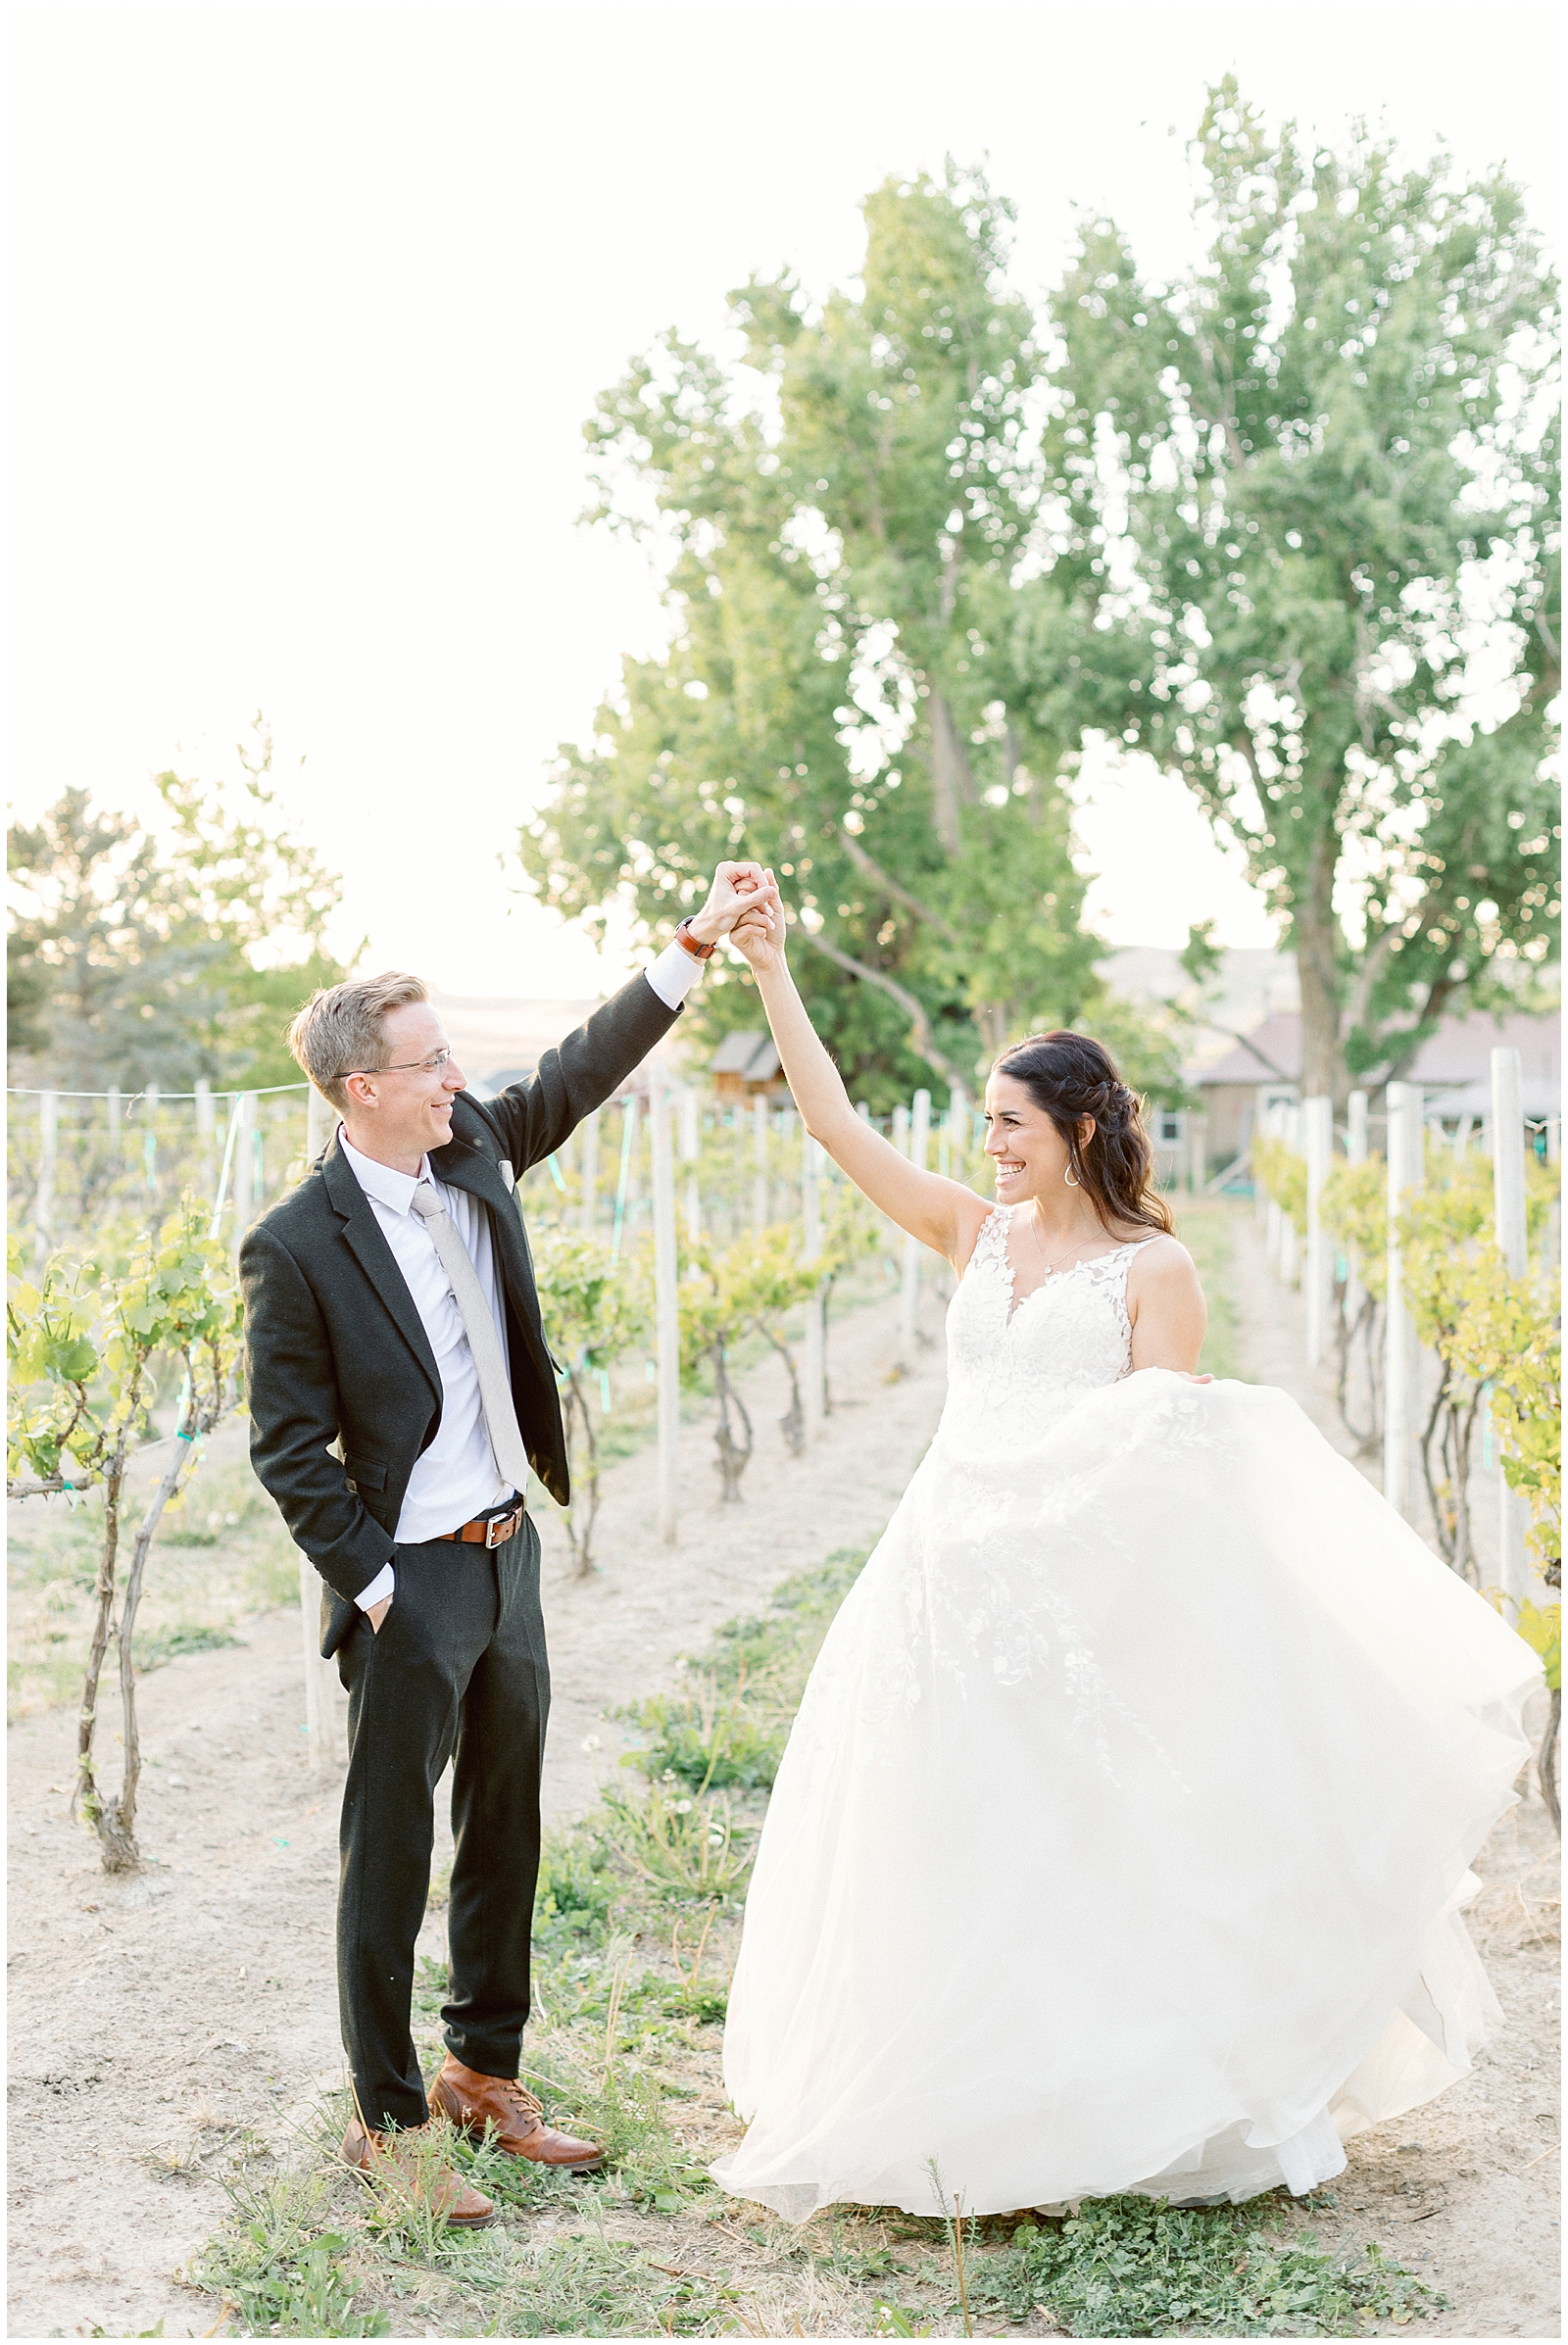 Twirling Bride at Idaho Spring Vineyard Wedding